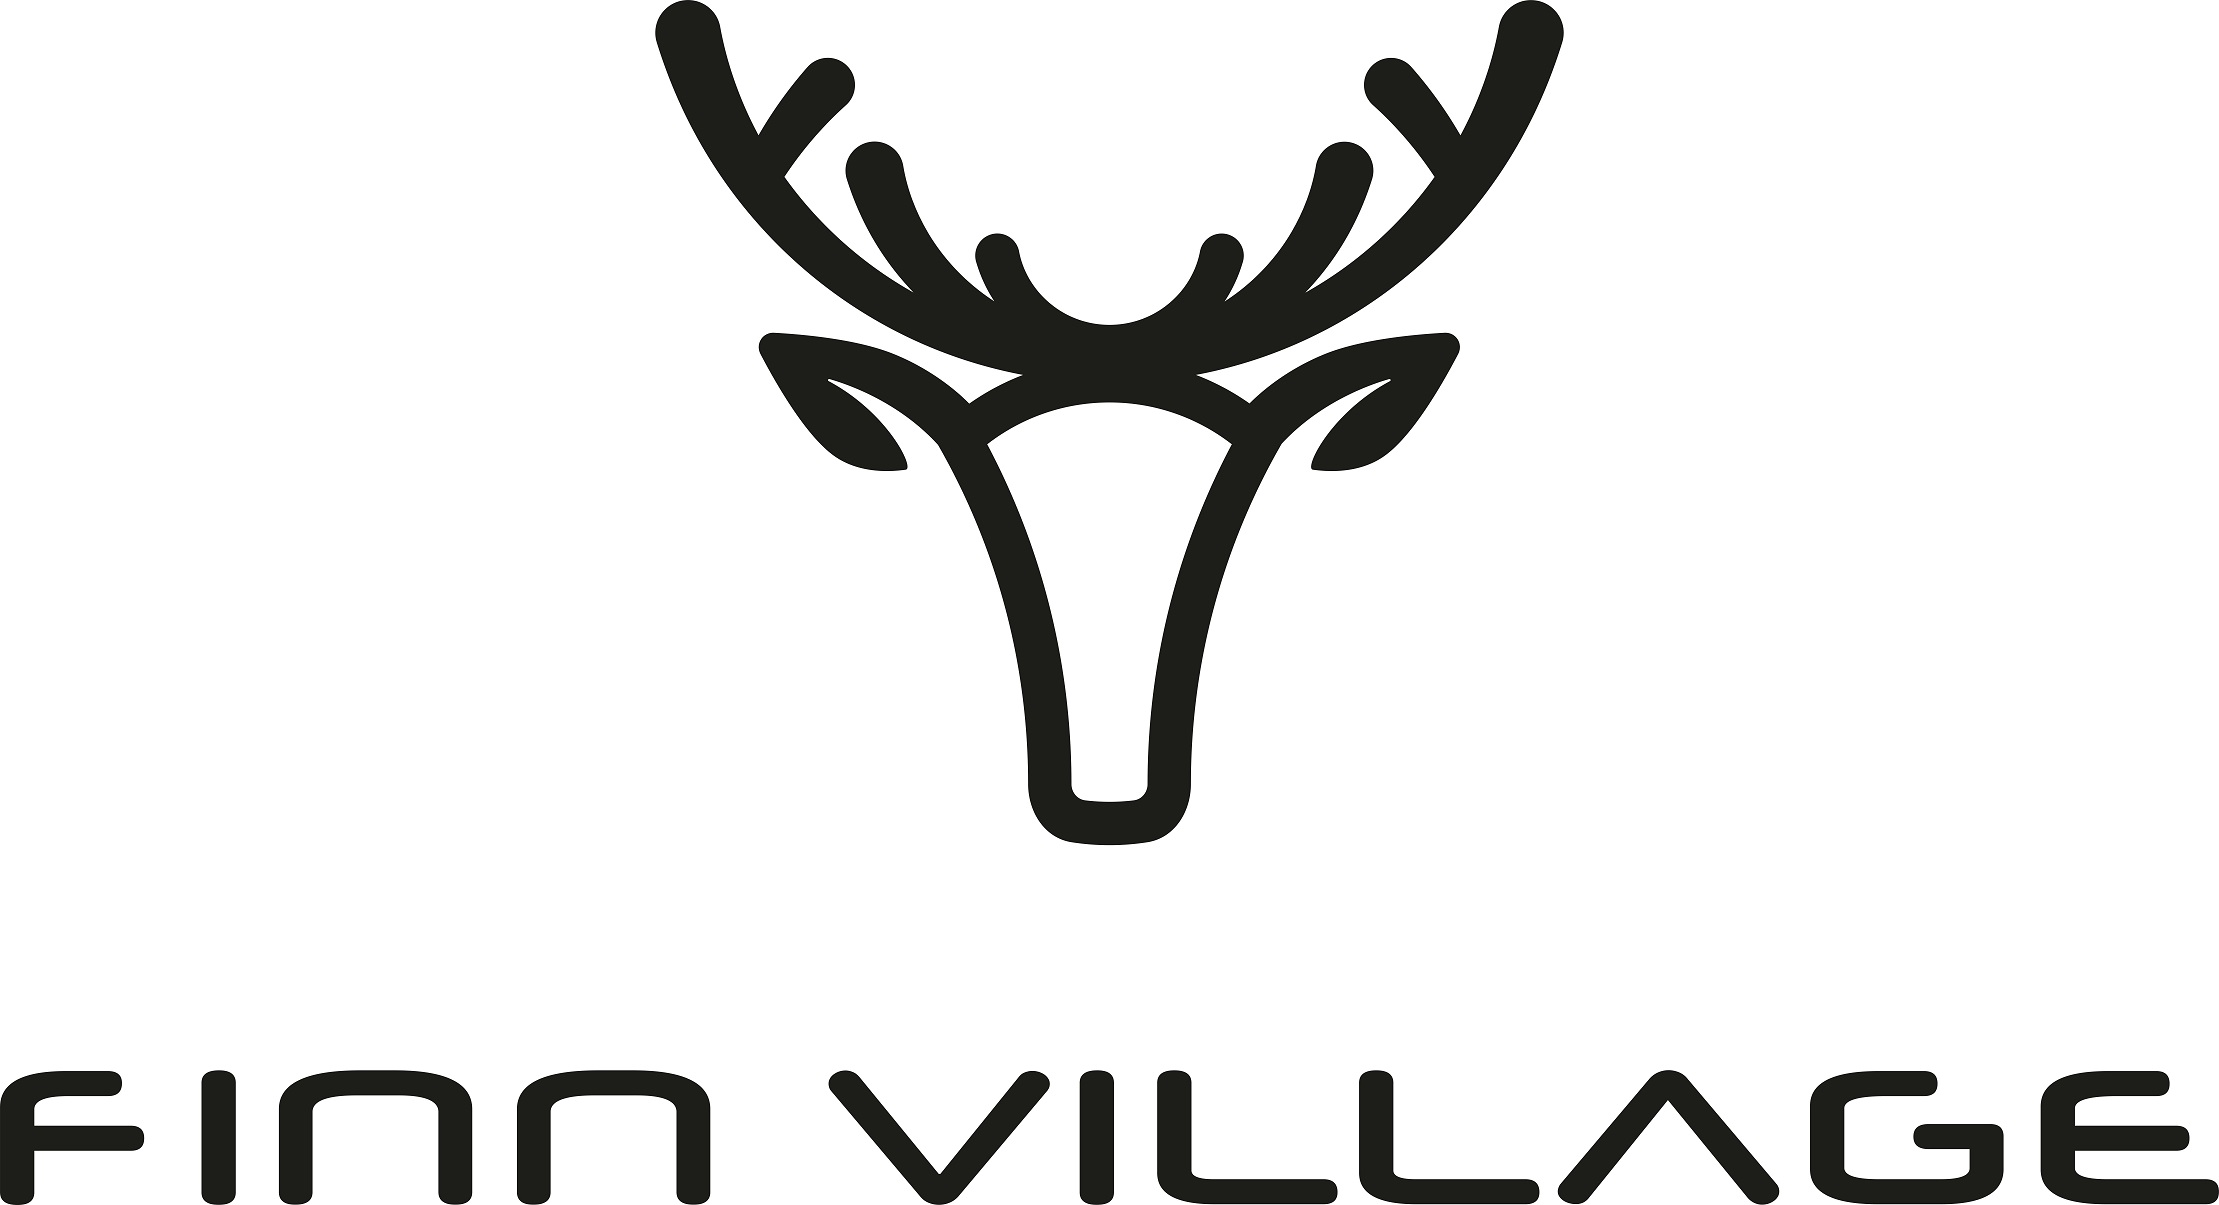 Finn village ist eine Marke der Kalevala Spirit GmbH und vertreibt finnische Produkte. Dieses Logo verlinkt darauf.